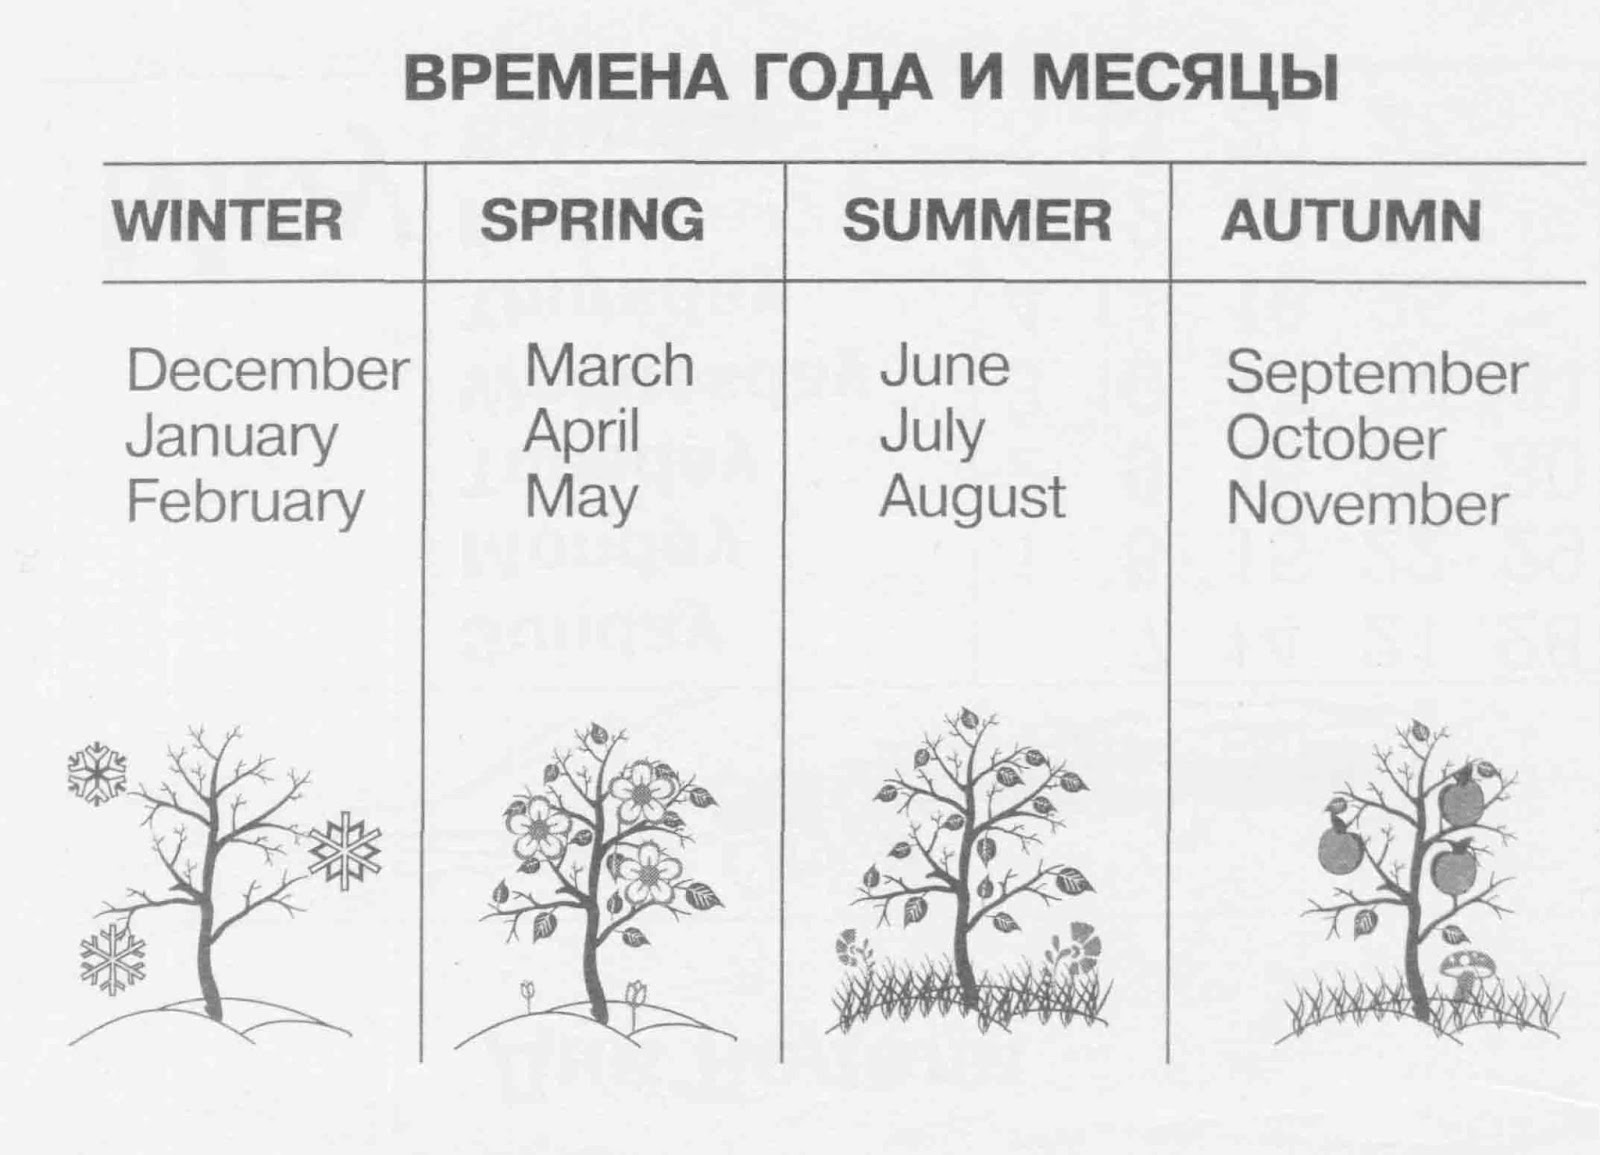 Тест на месяц года. Поры года на английском с транскрипцией. Названия месяцев и времен года на английском языке. Времена года по месяцам по английскому. Времена года и месяцы на английском языке.